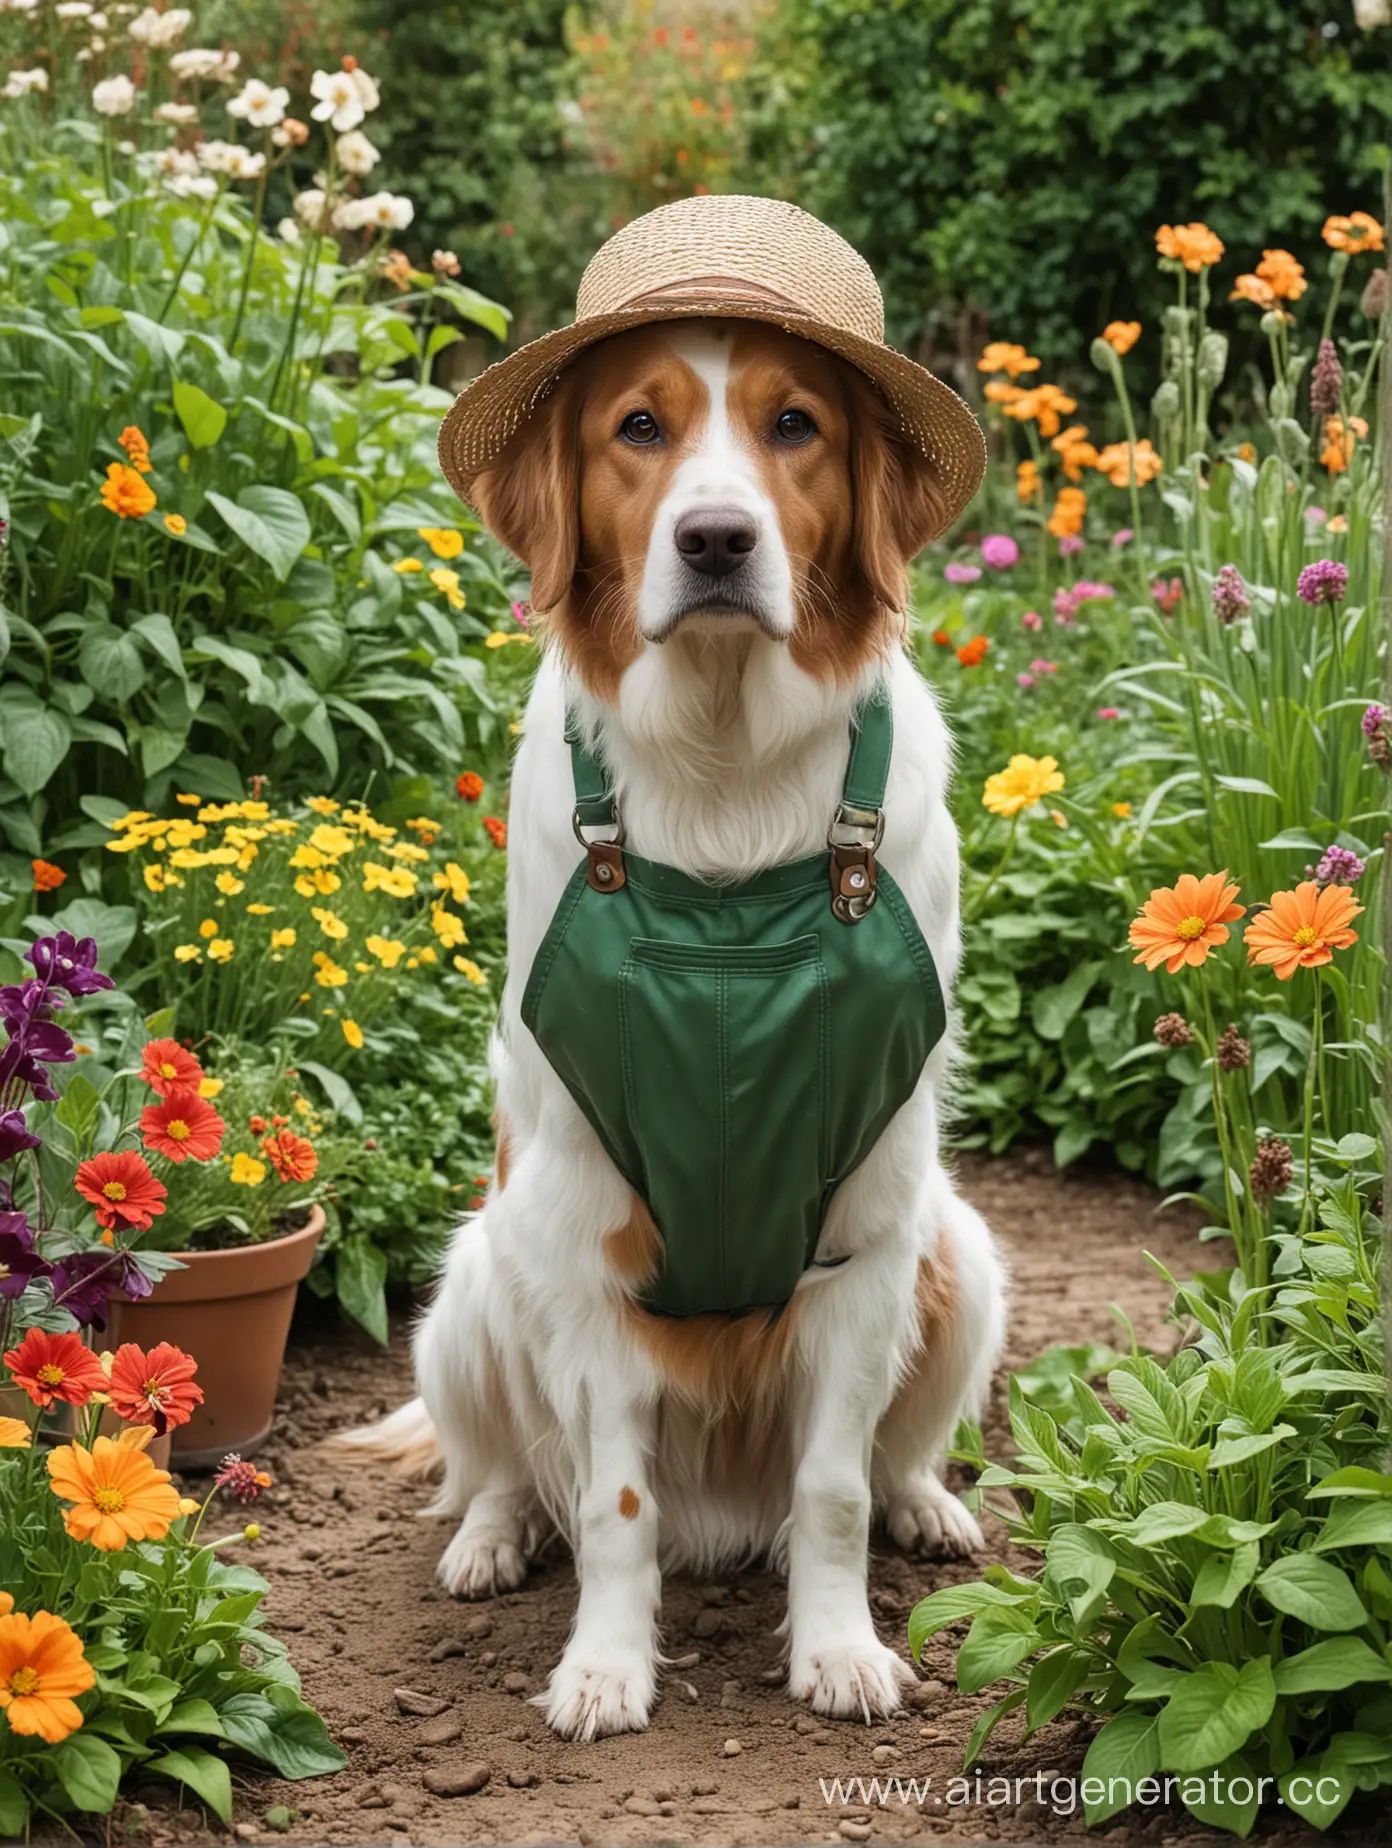 Gardener-Tending-to-Garden-with-Faithful-Dog-Companion